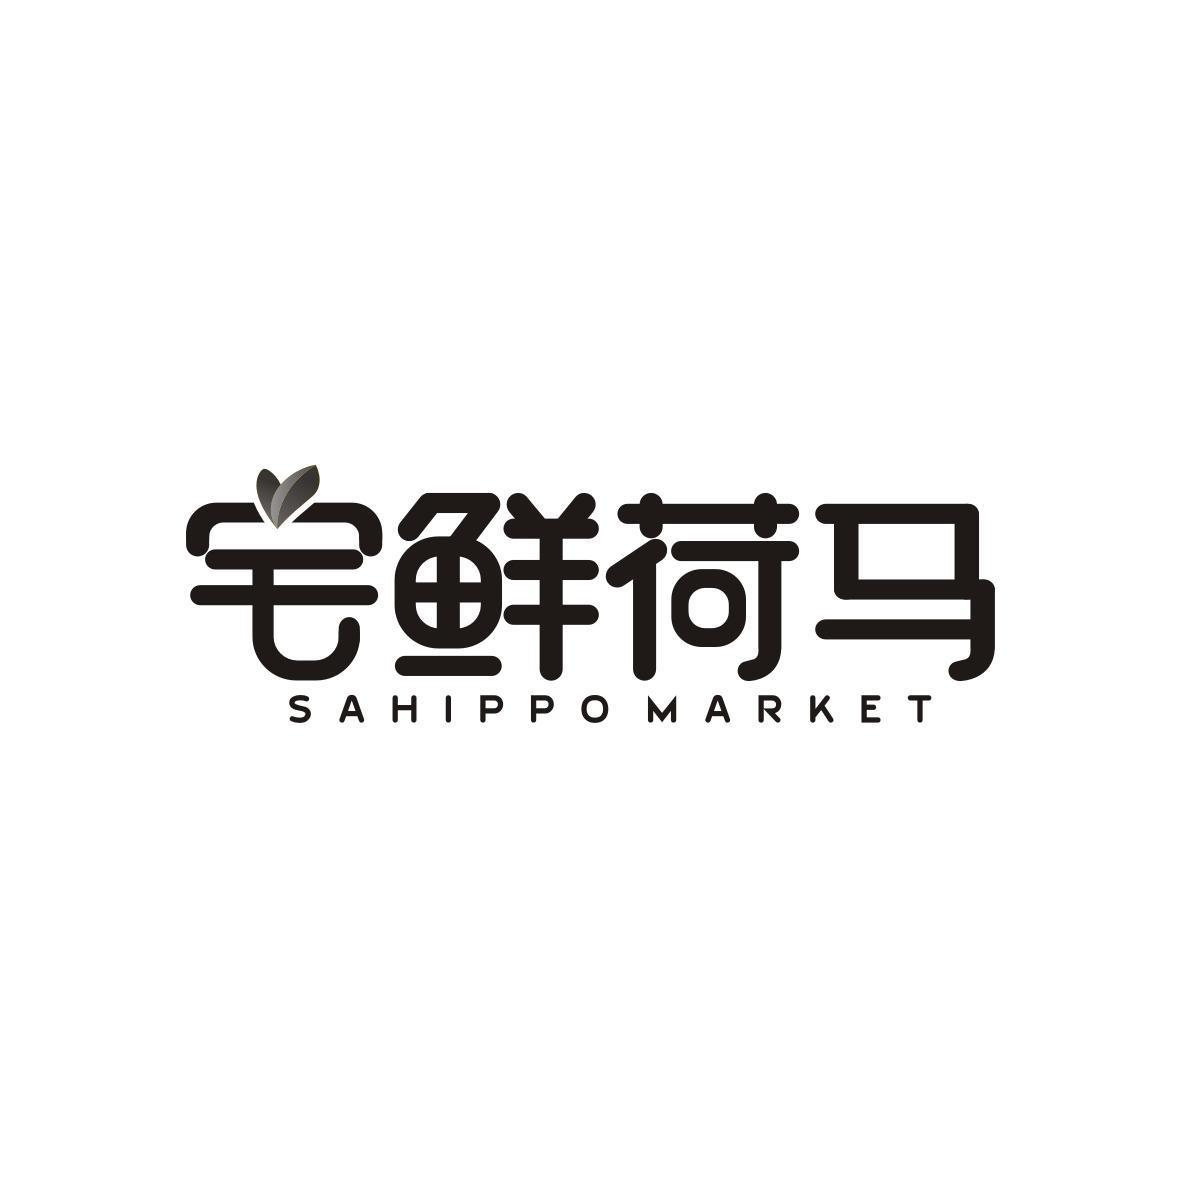 v-29185 宅鲜荷马
Sahippo Market